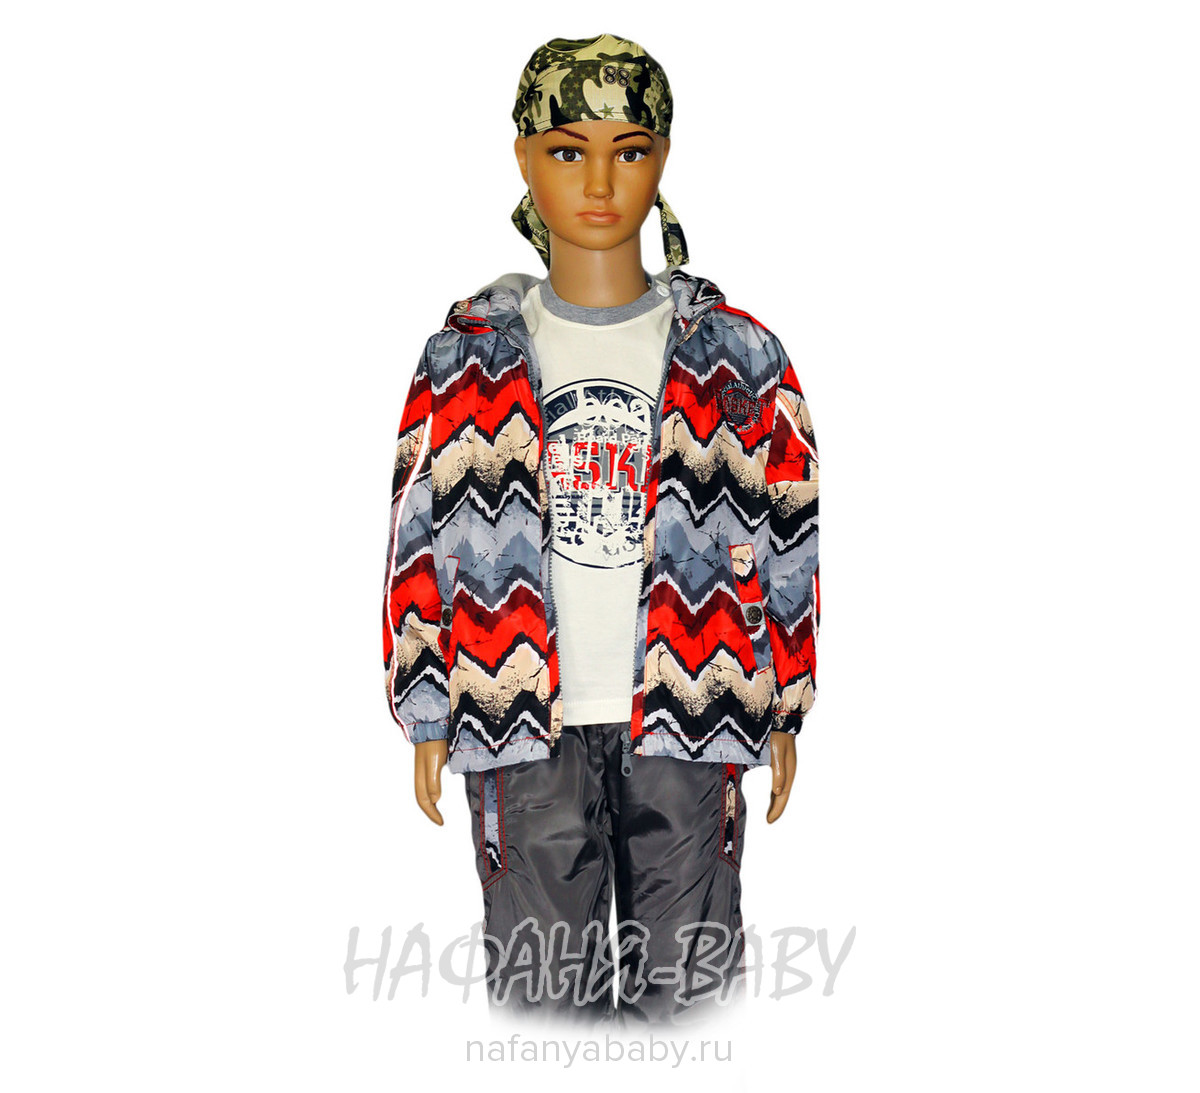 Детский костюм AIMICO, купить в интернет магазине Нафаня. арт: 1509 цвет темно-серый с красным